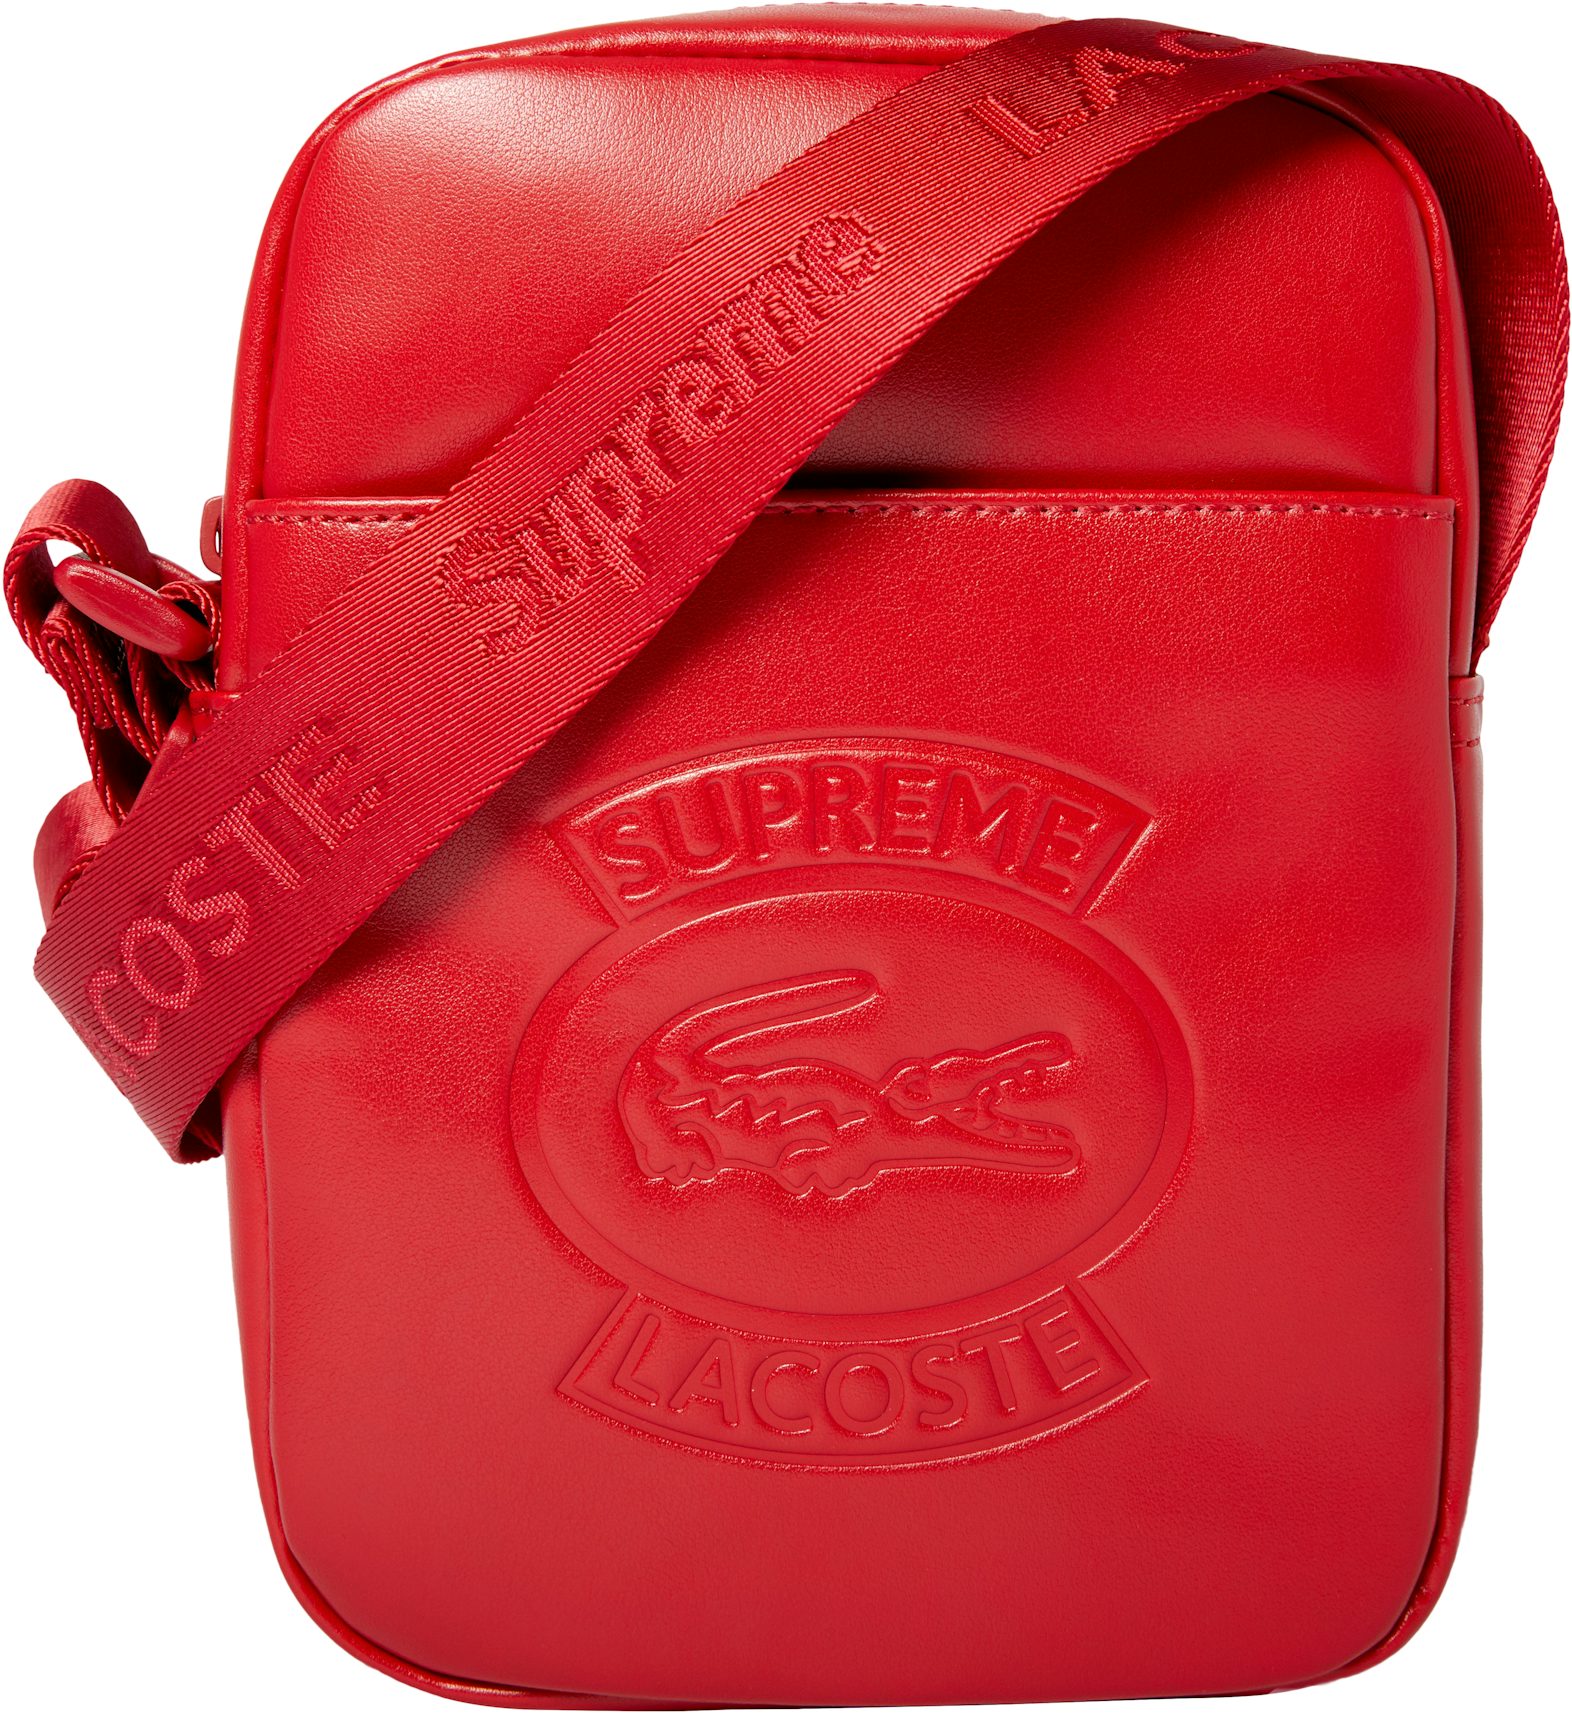 Supreme Logo Strap Shoulder Bag in Red